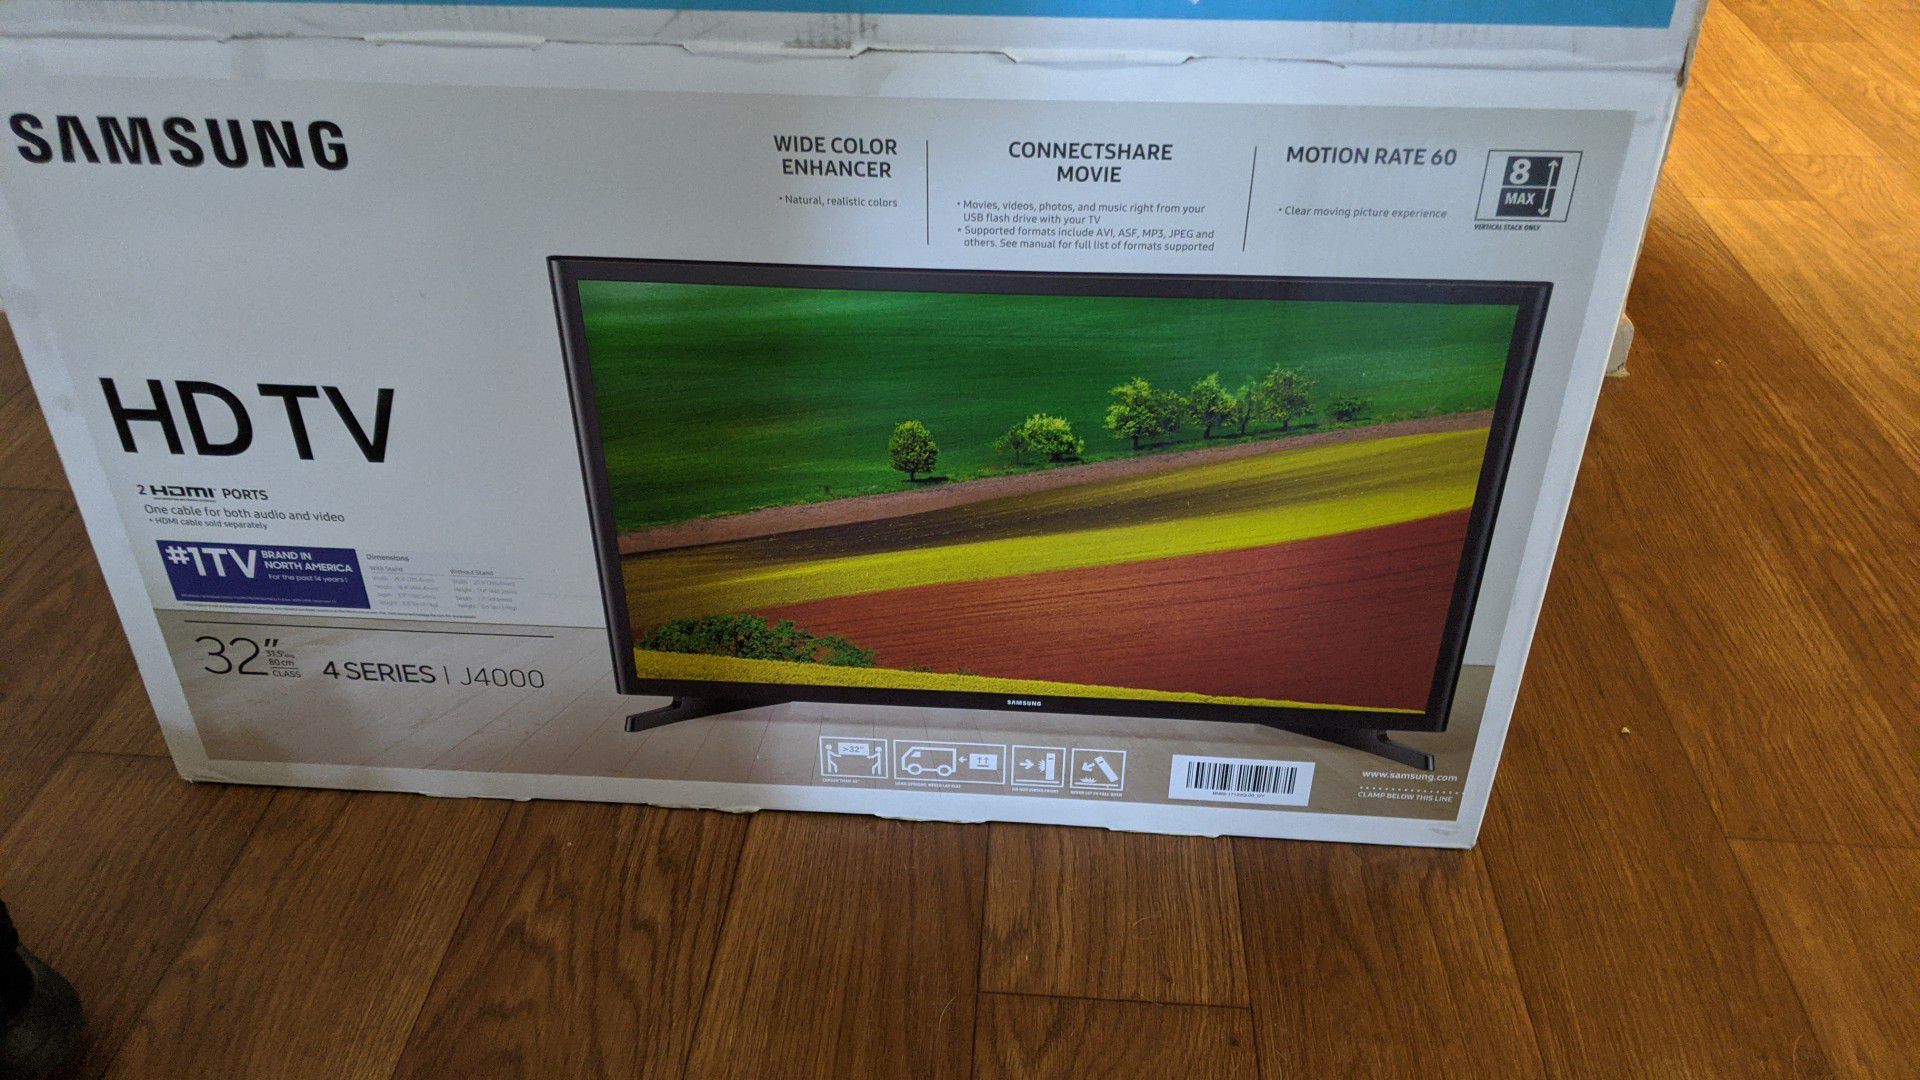 Samsung J4000 32 inch LED TV